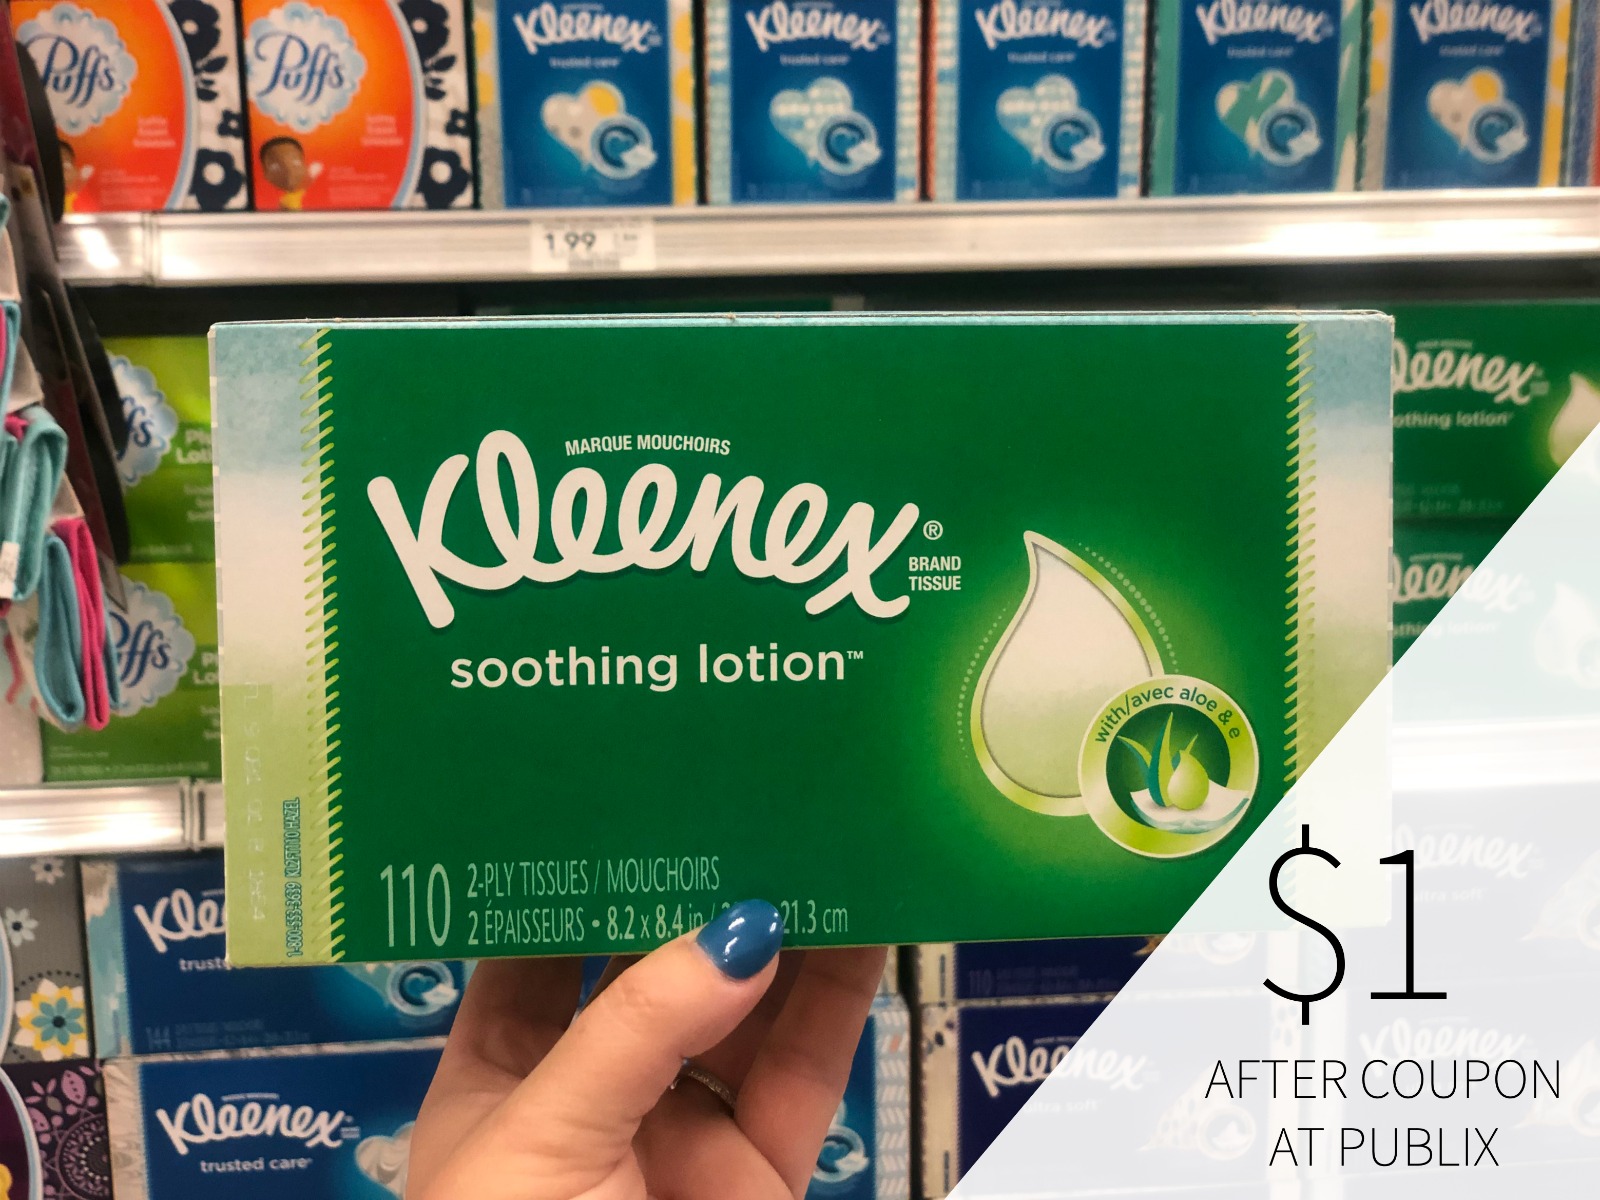 Super Deal On Kleenex Tissues At Publix – Just $1 Per Box!